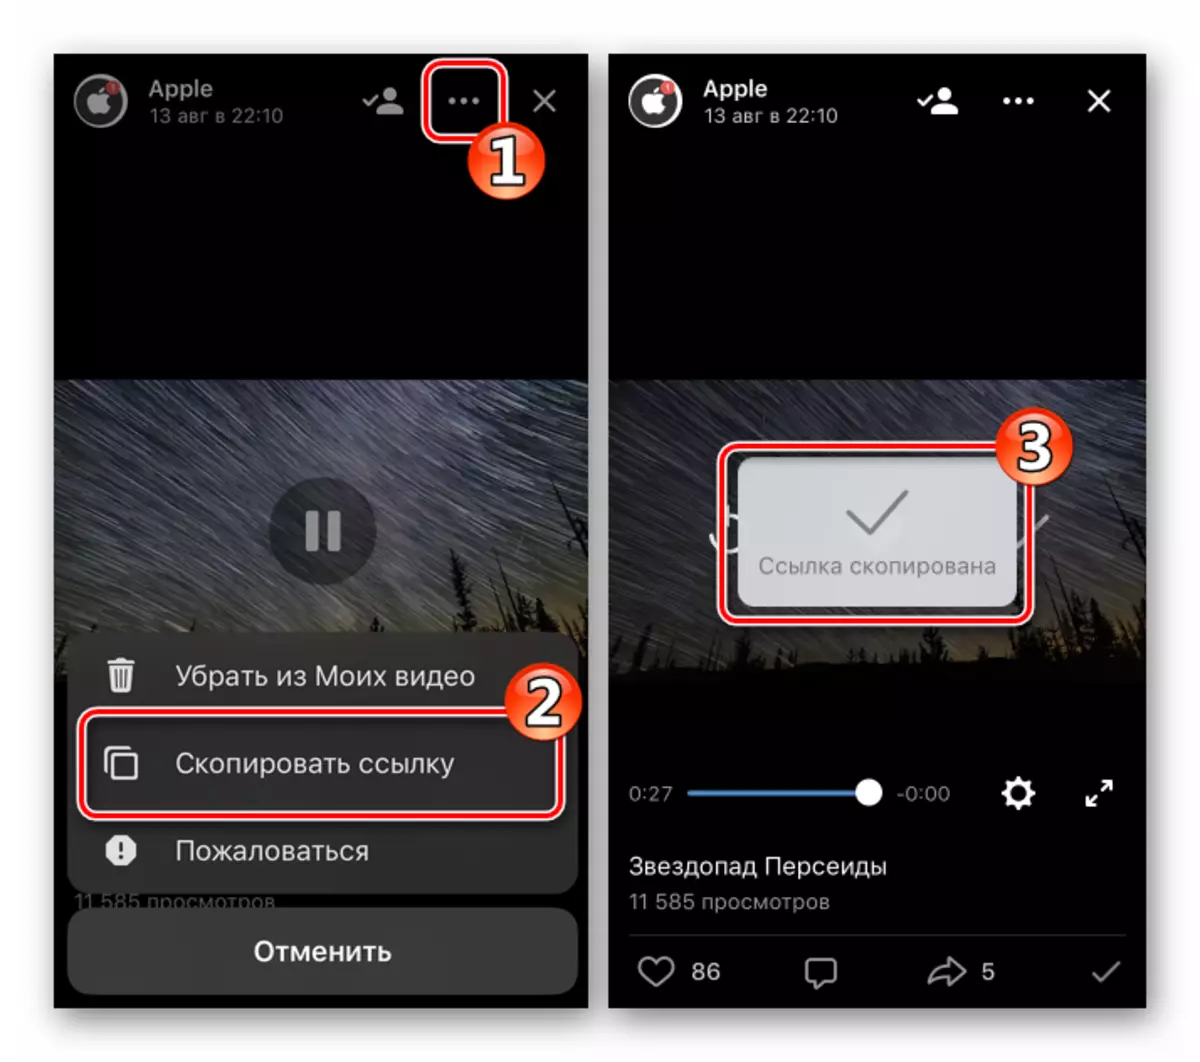 VKontakette fir iOS Copy Linken op de Video Download duerno